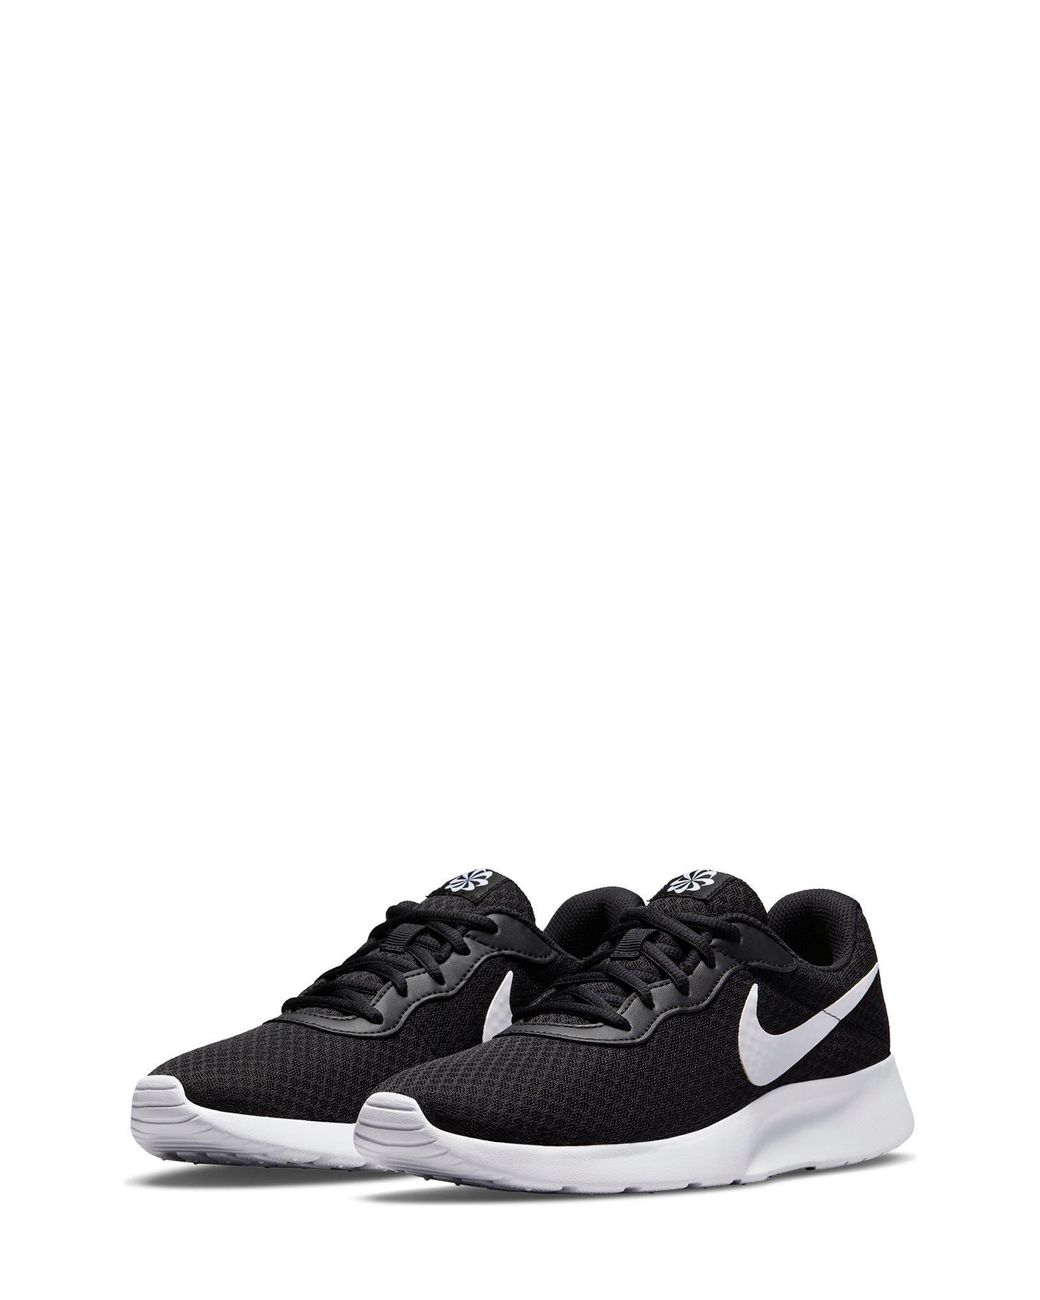 Nike Tanjun Running Shoe In Black/white At Nordstrom Rack | Lyst